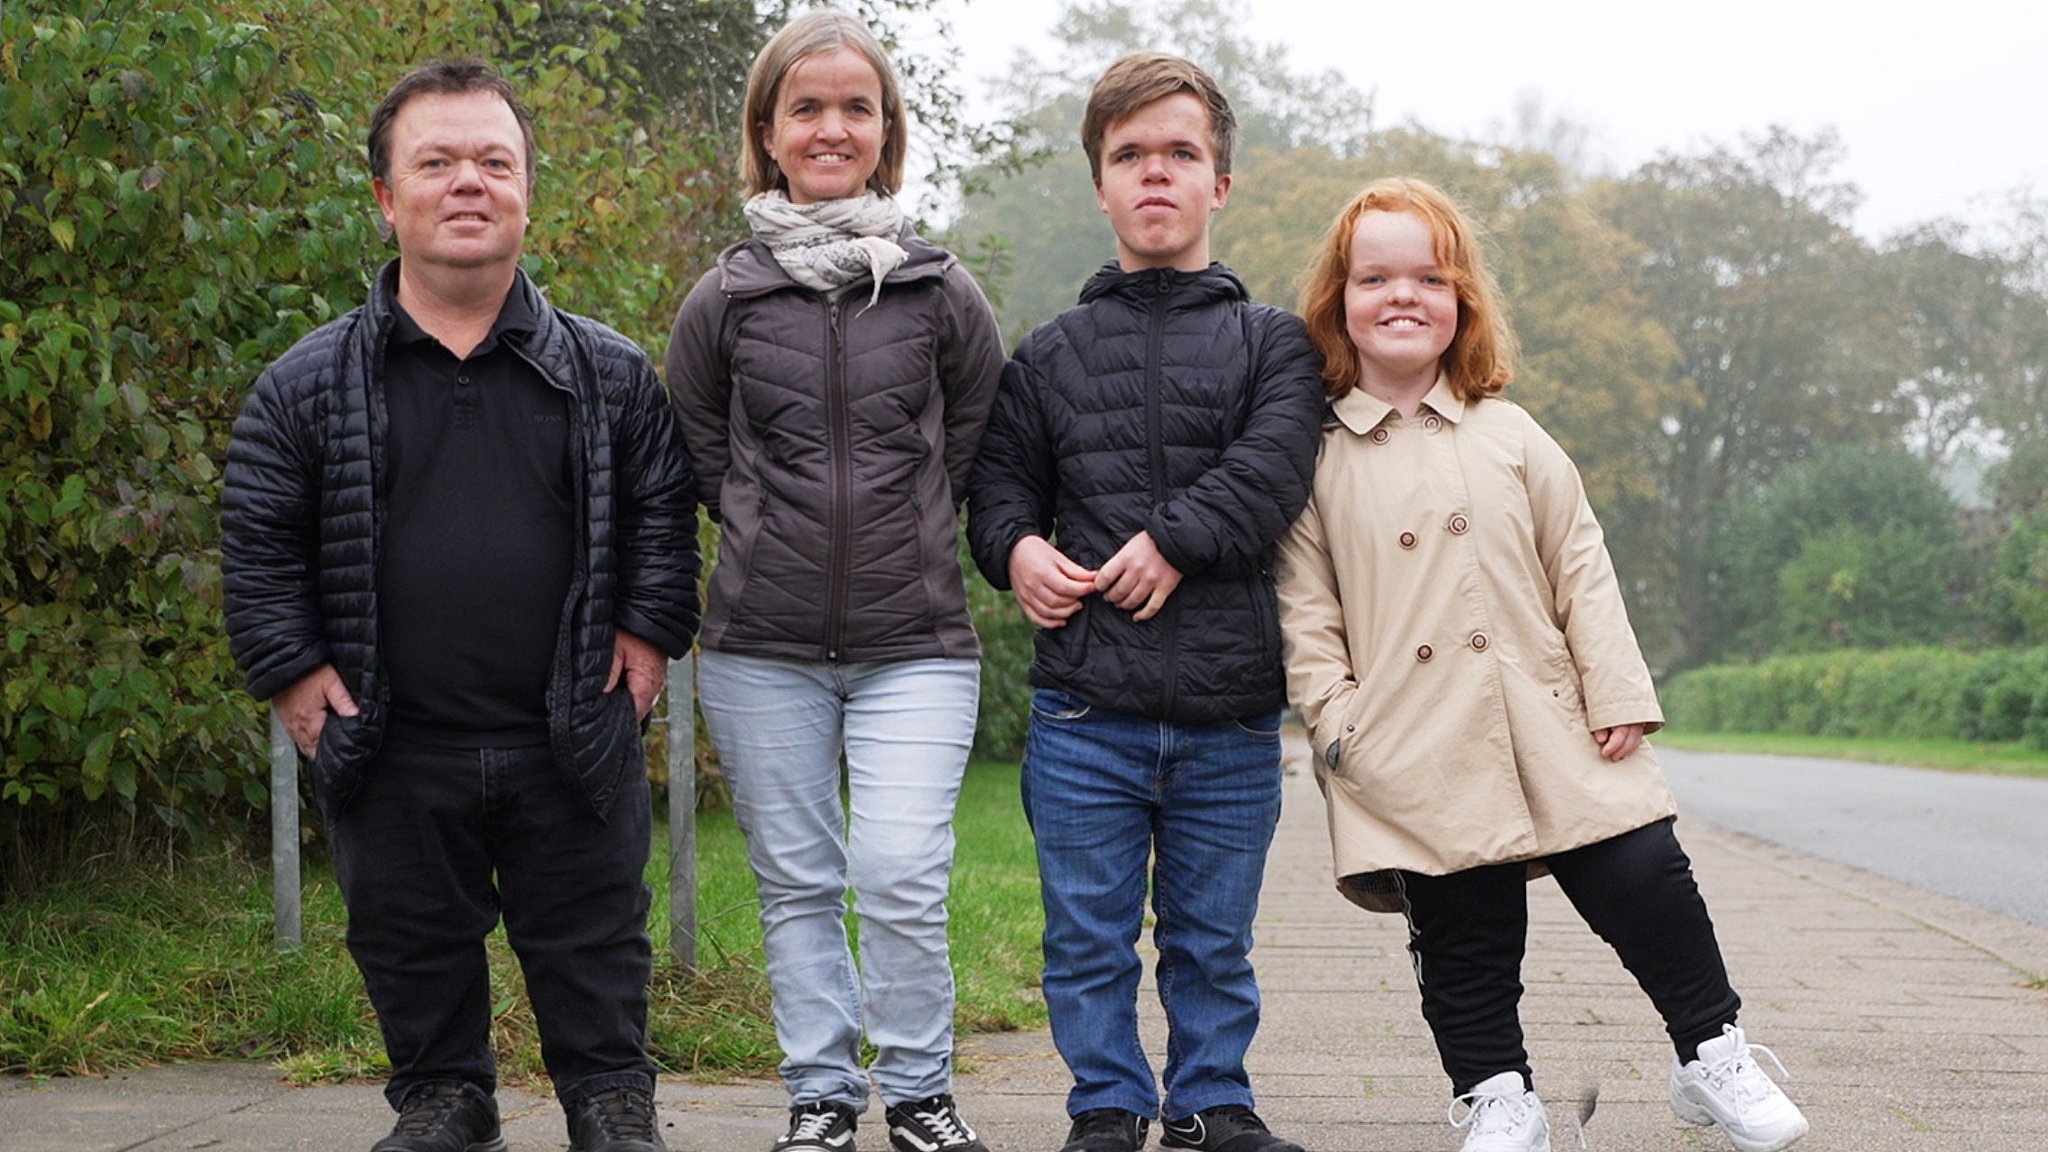 forlade Elektriker Passiv Hele Kamillas familie er dværge - drømmer selv om at få dværgebørn | TV2  Østjylland